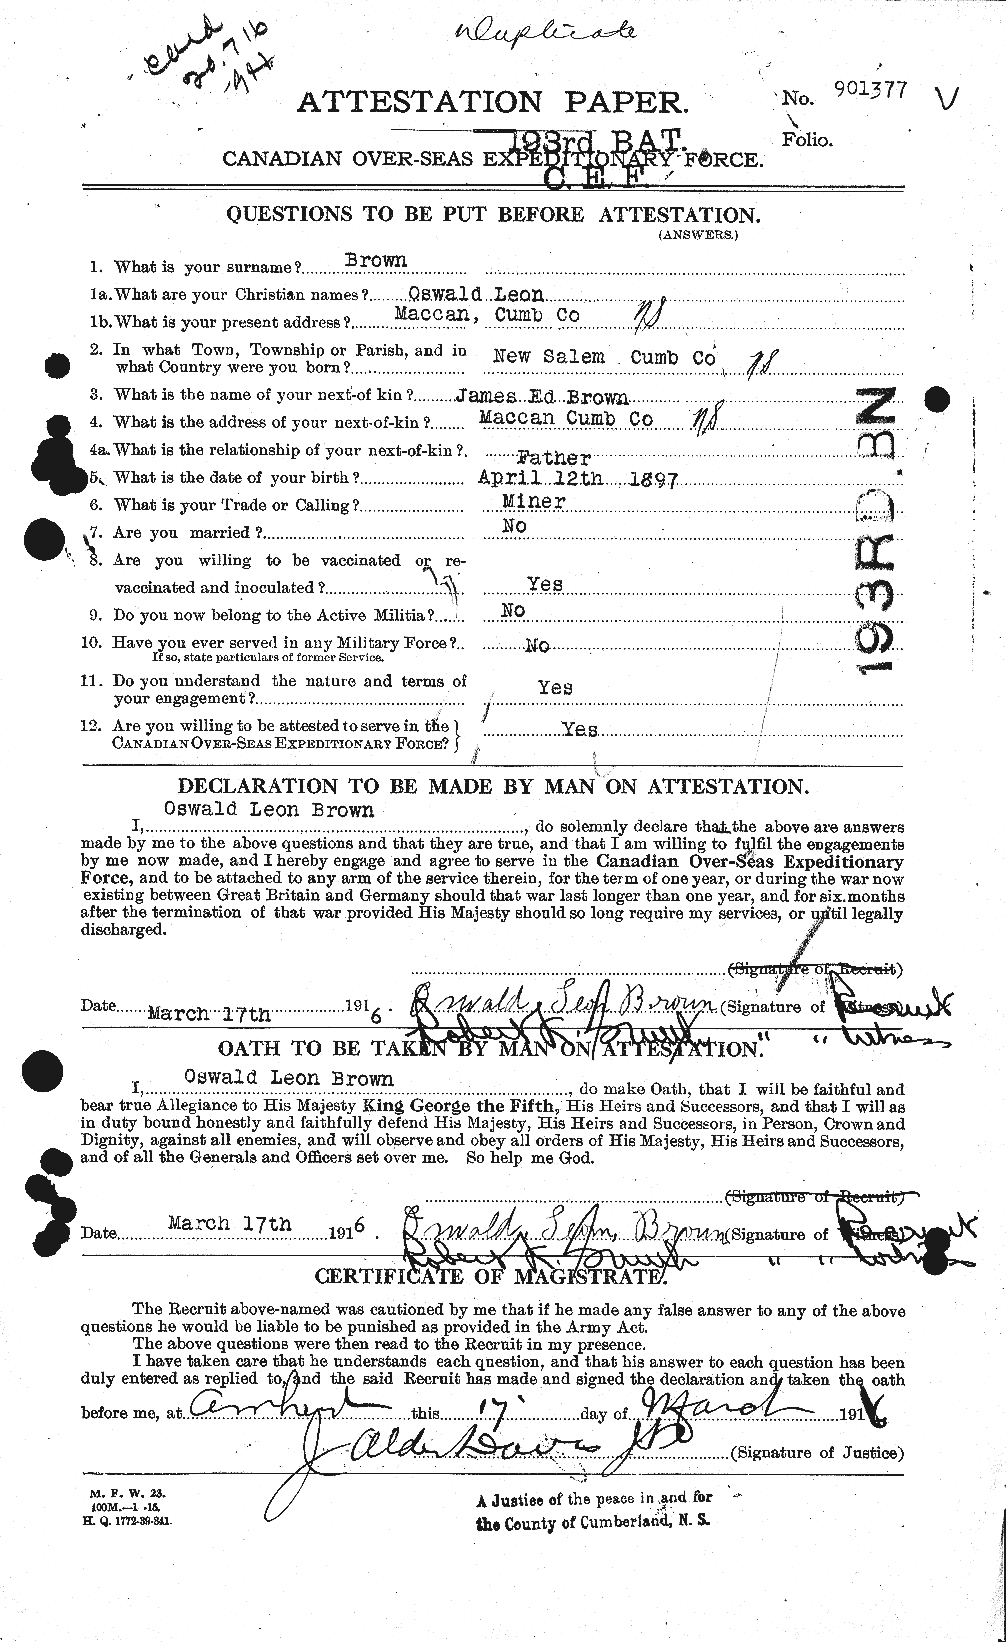 Dossiers du Personnel de la Première Guerre mondiale - CEC 267143a